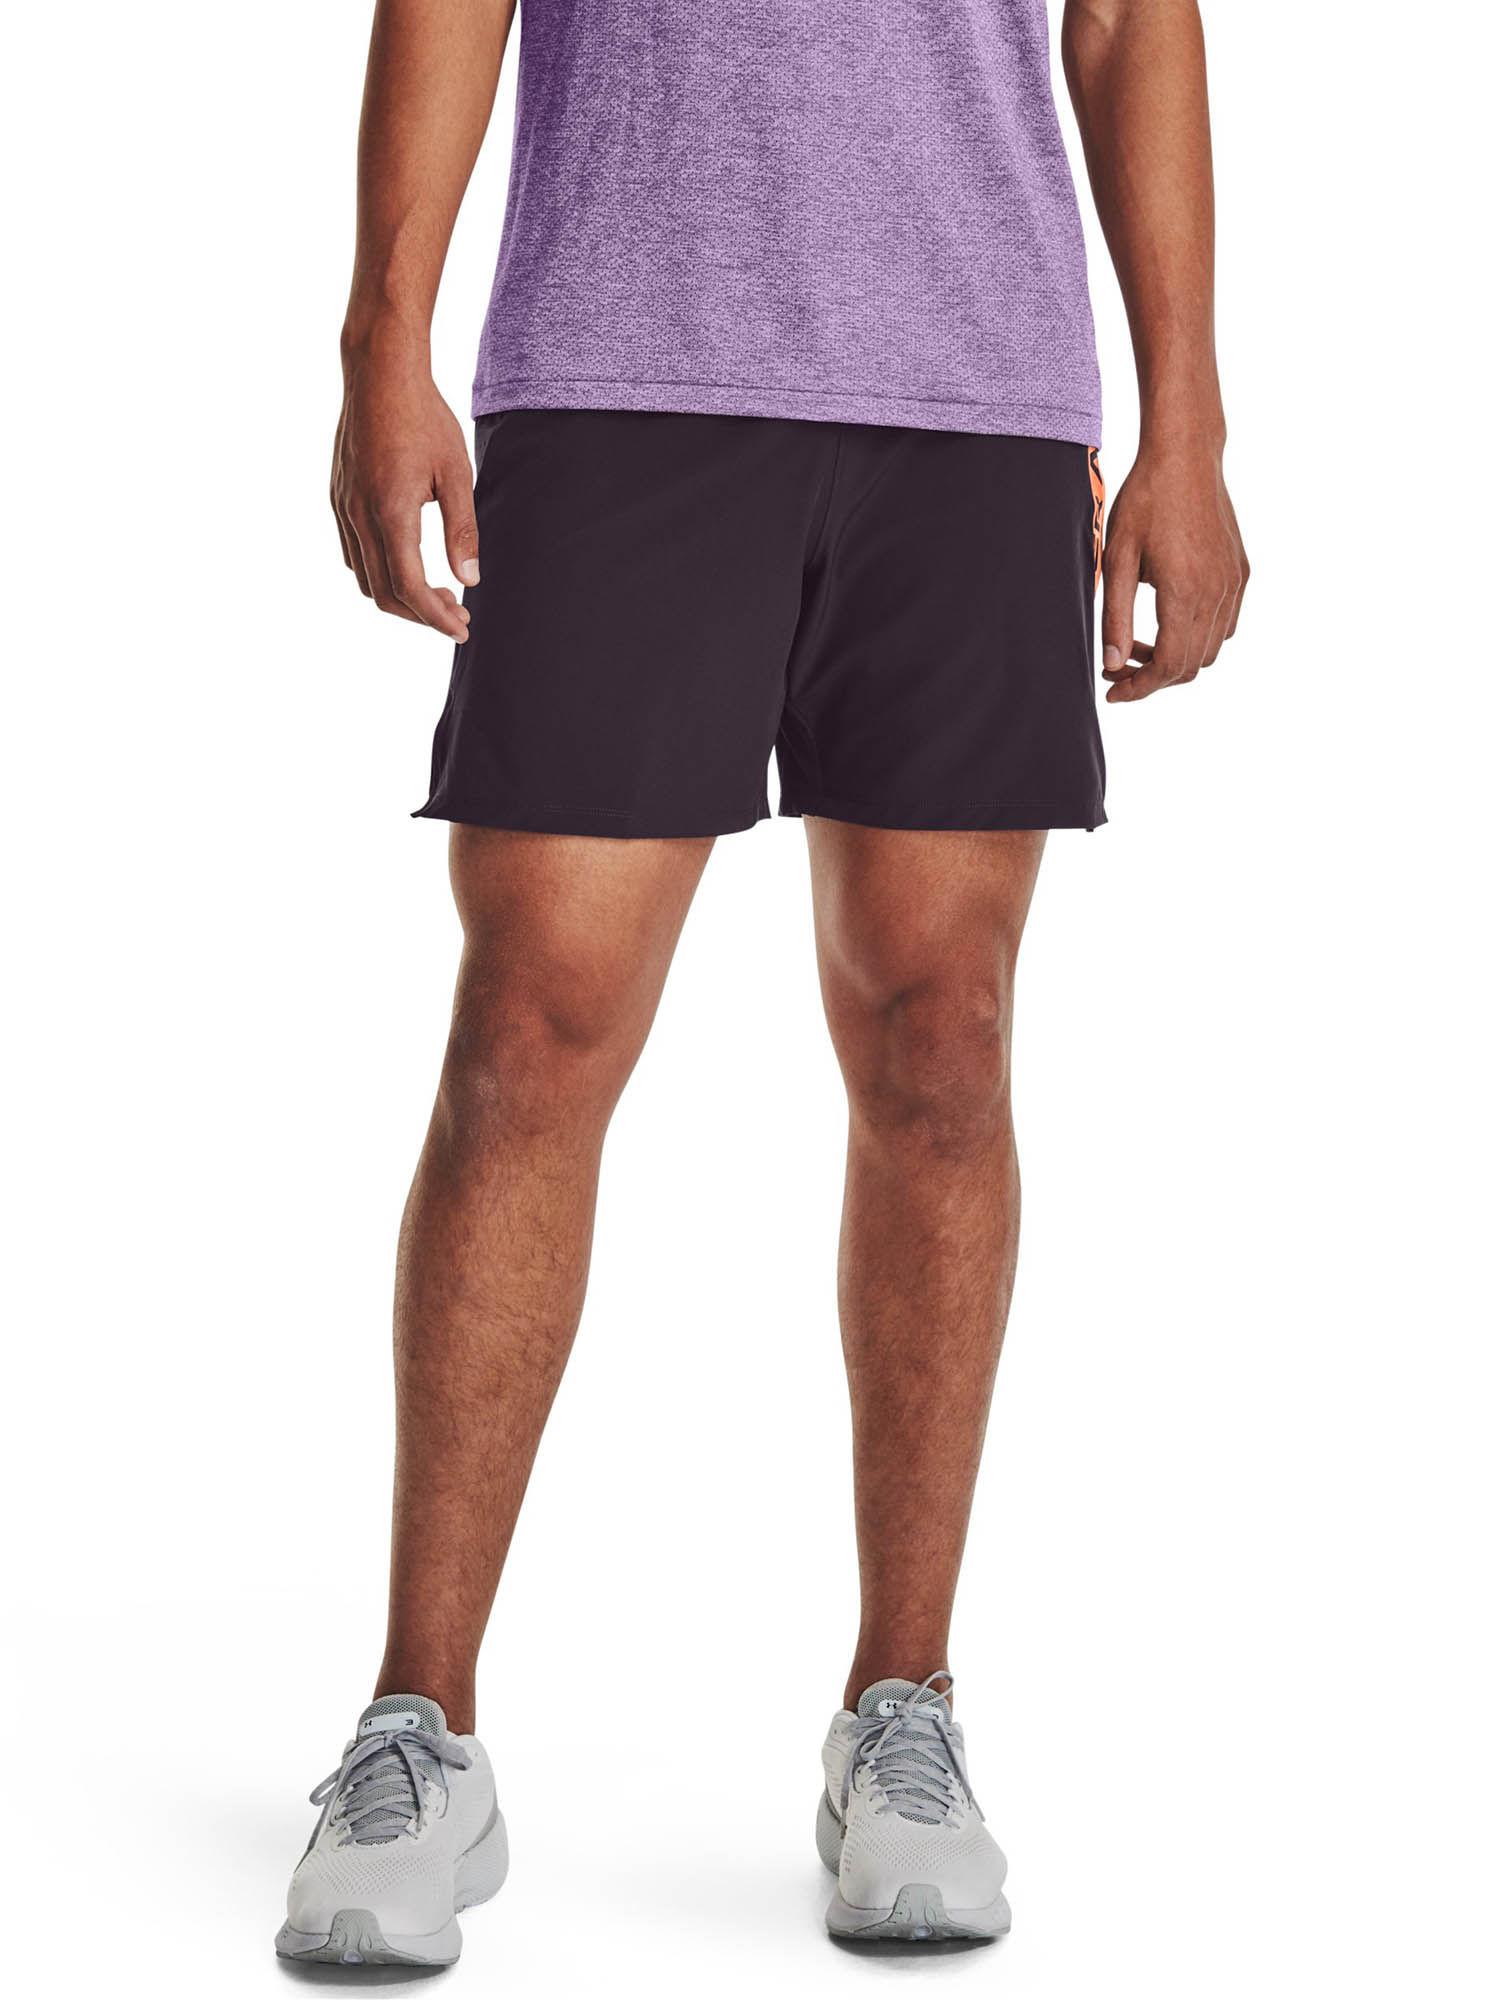 launch elite shorts-purple